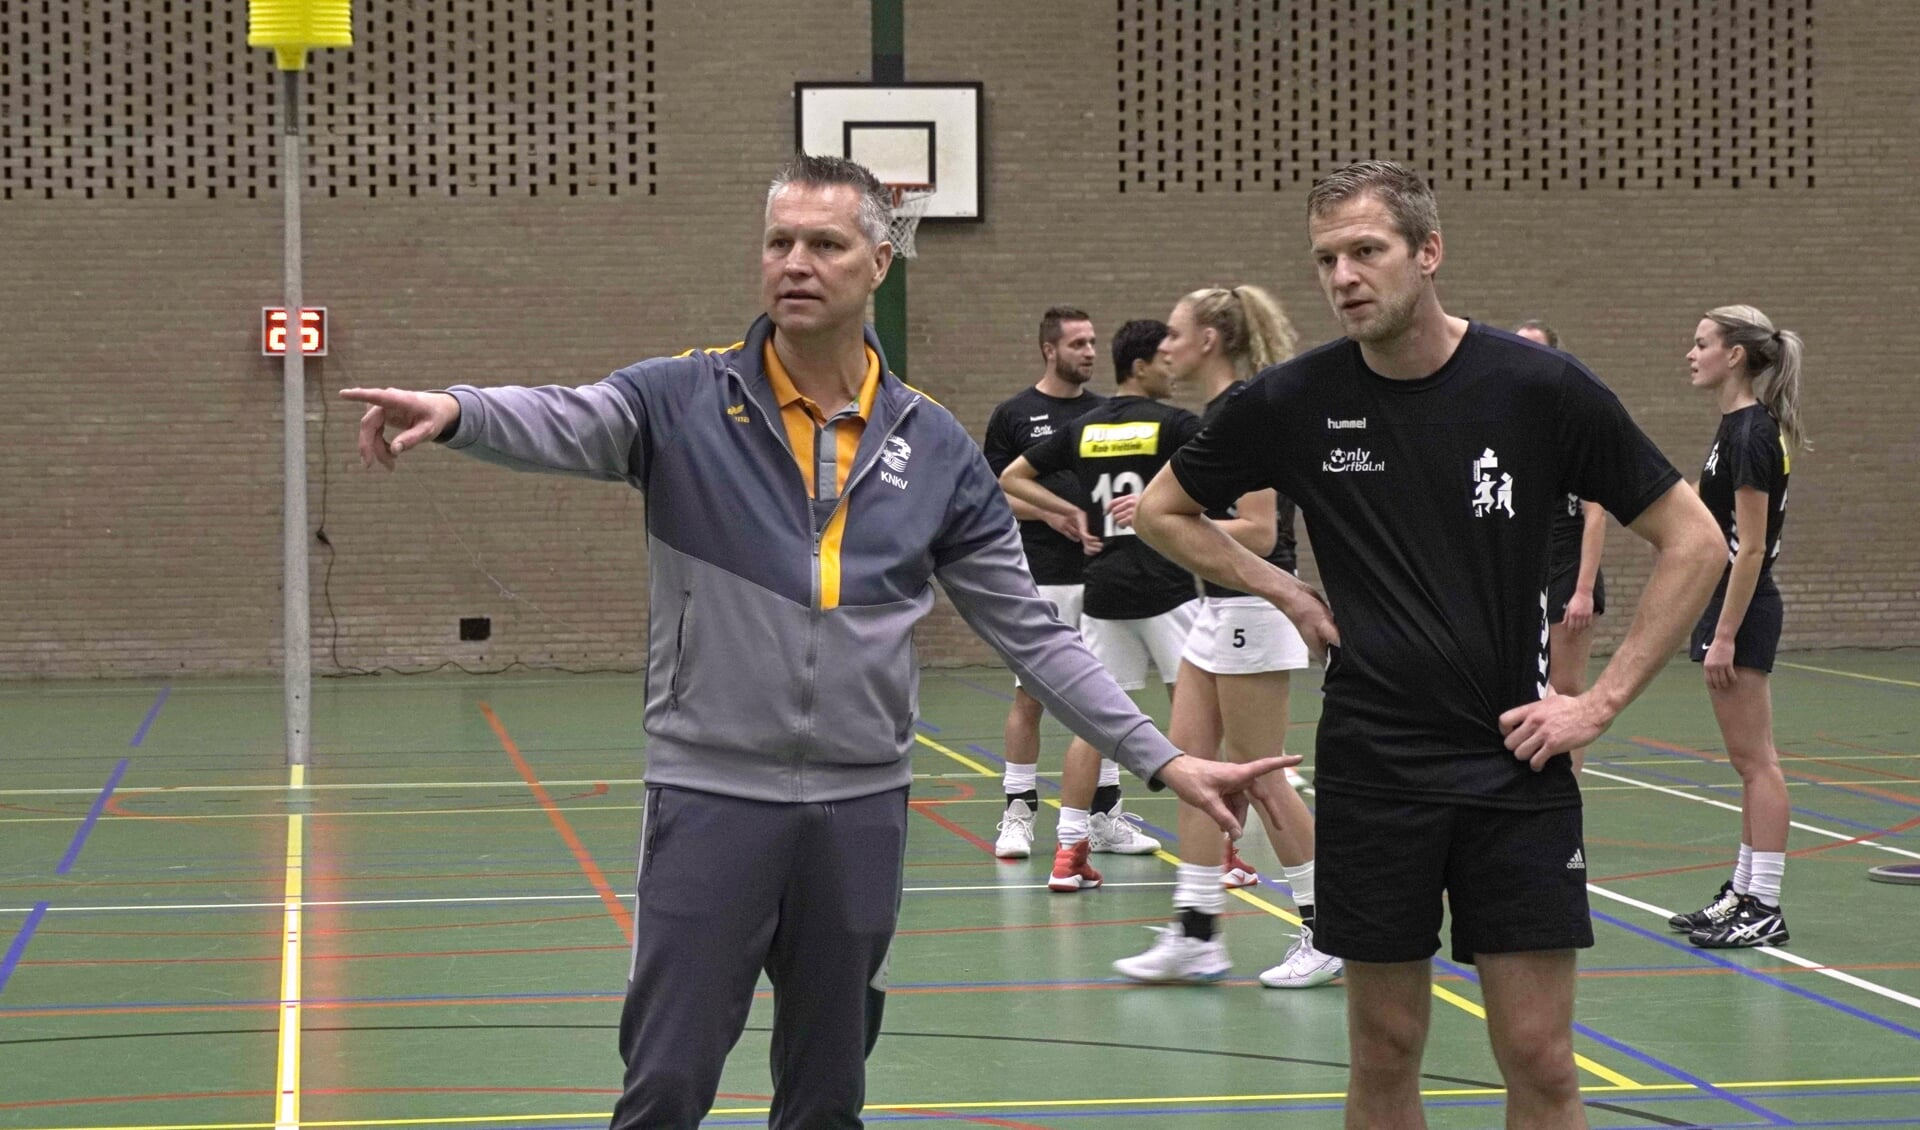 Korfbalbondscoach Jan Niebeek was zaterdag even terug in Nijkerk voor een clinic aan de selectie van Sparta korfbal.